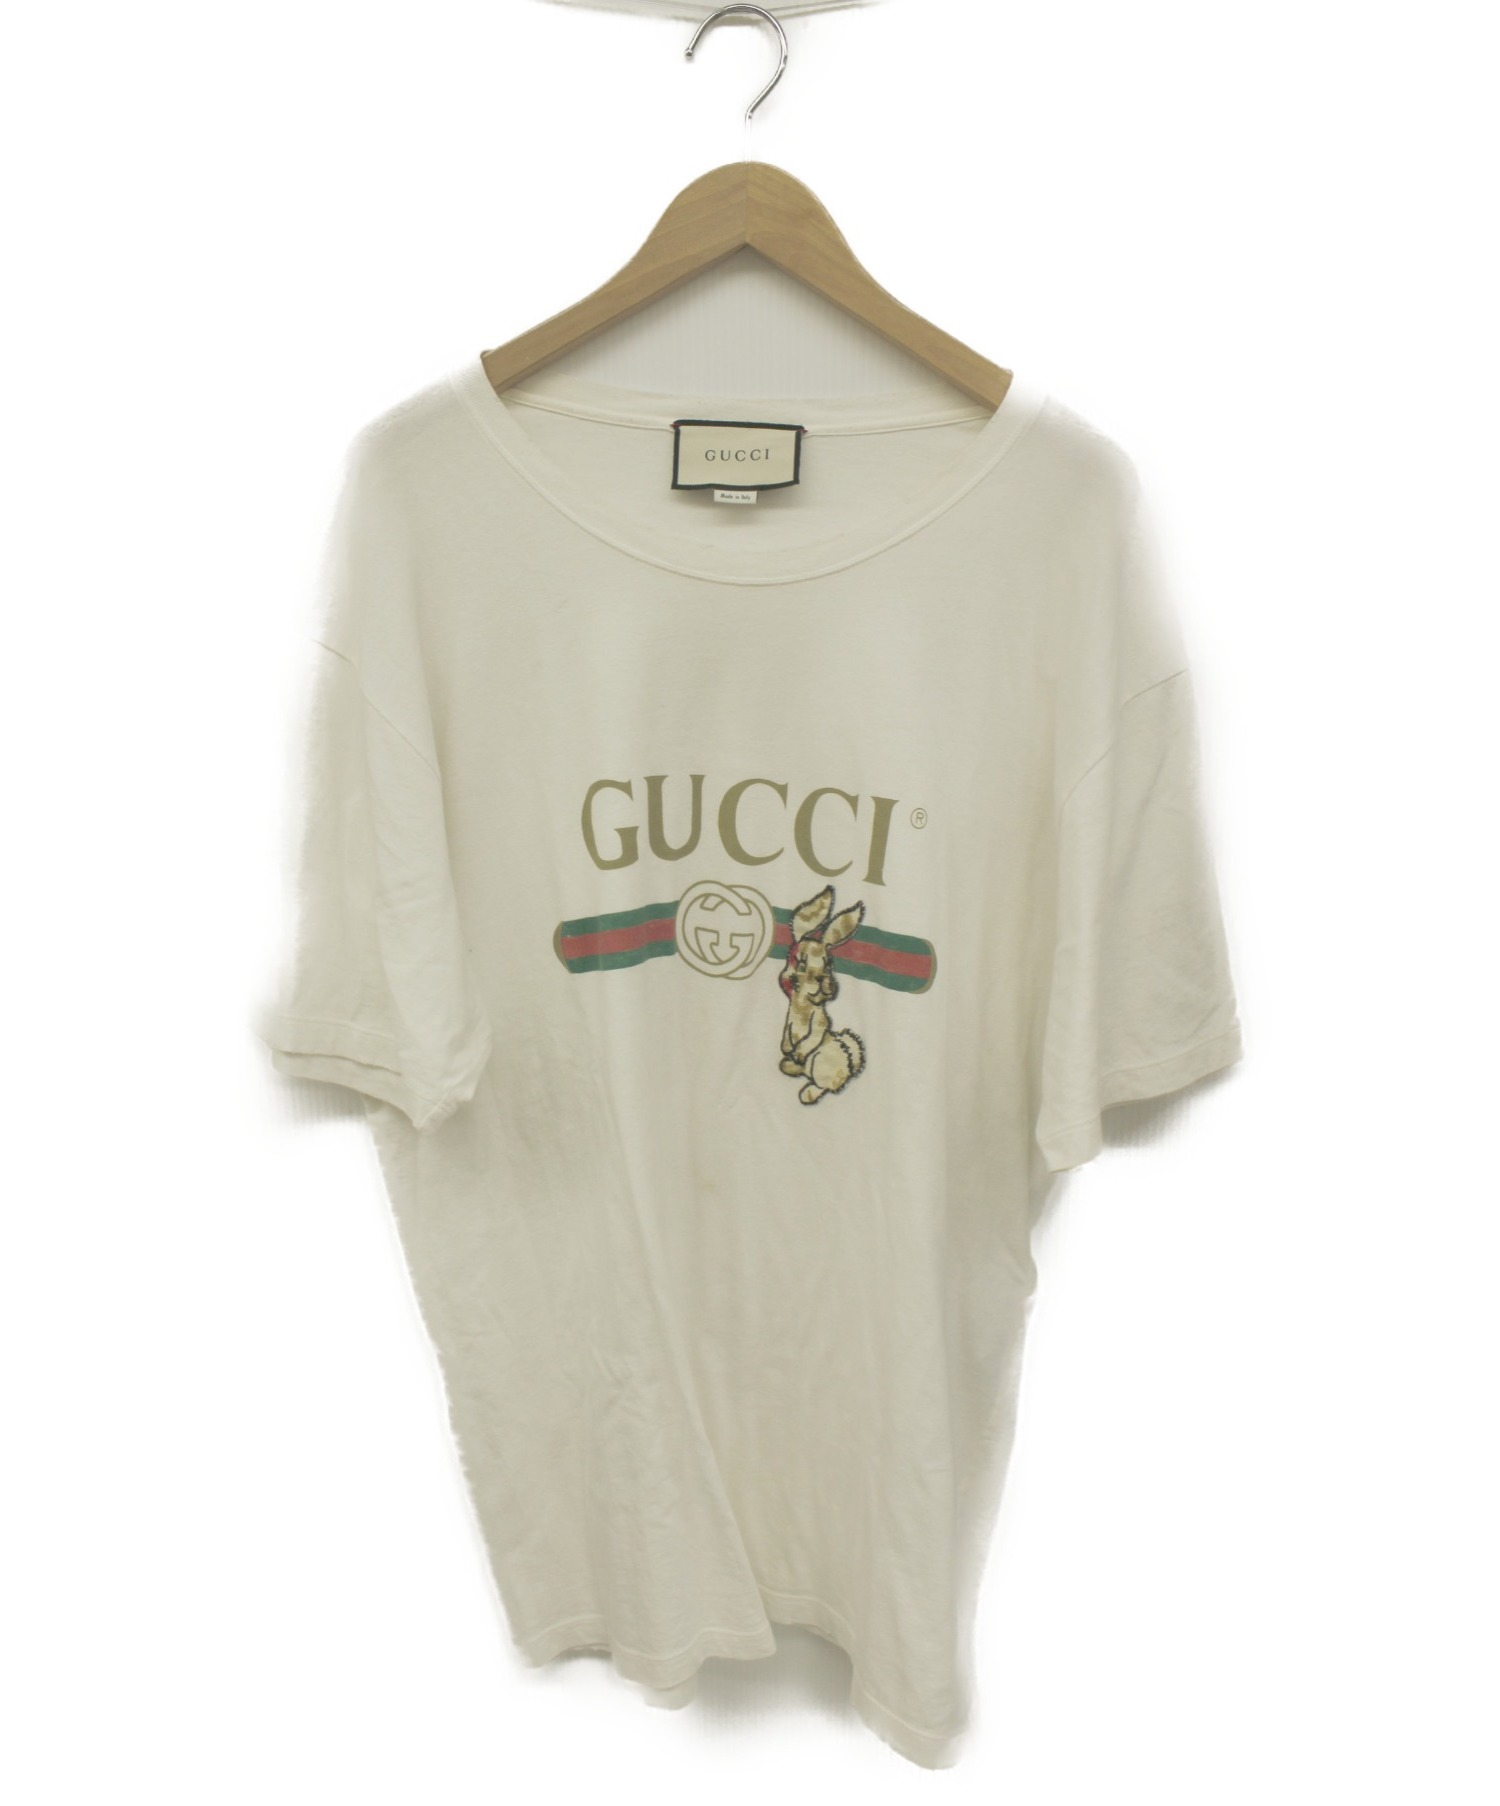 GUCCI (グッチ) Tシャツ ホワイト サイズ:記載なし